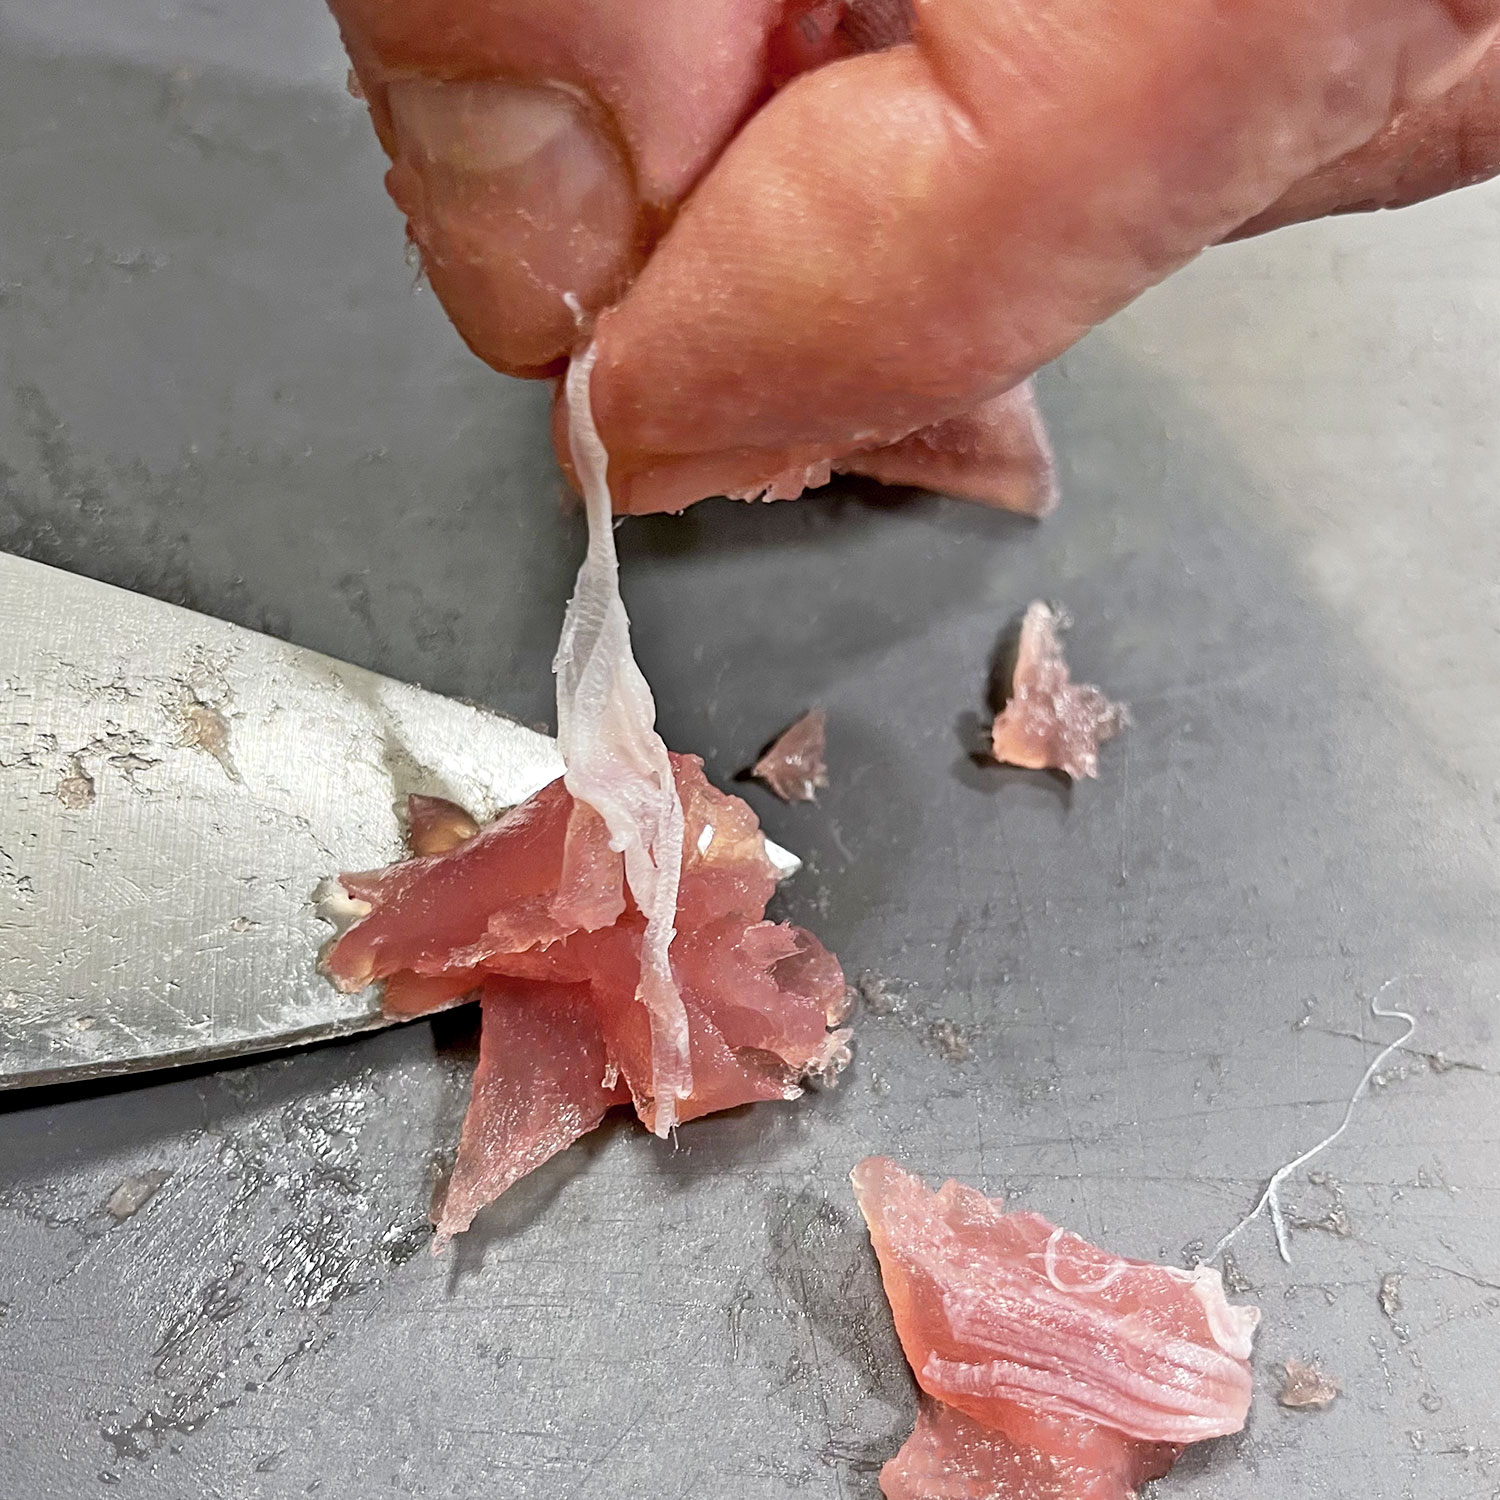 Thunfisch für Thunfisch-Avocado-Tatar vorbereiten | Koch für 2!: Silberhäutchen entfernen | Koch für 2!